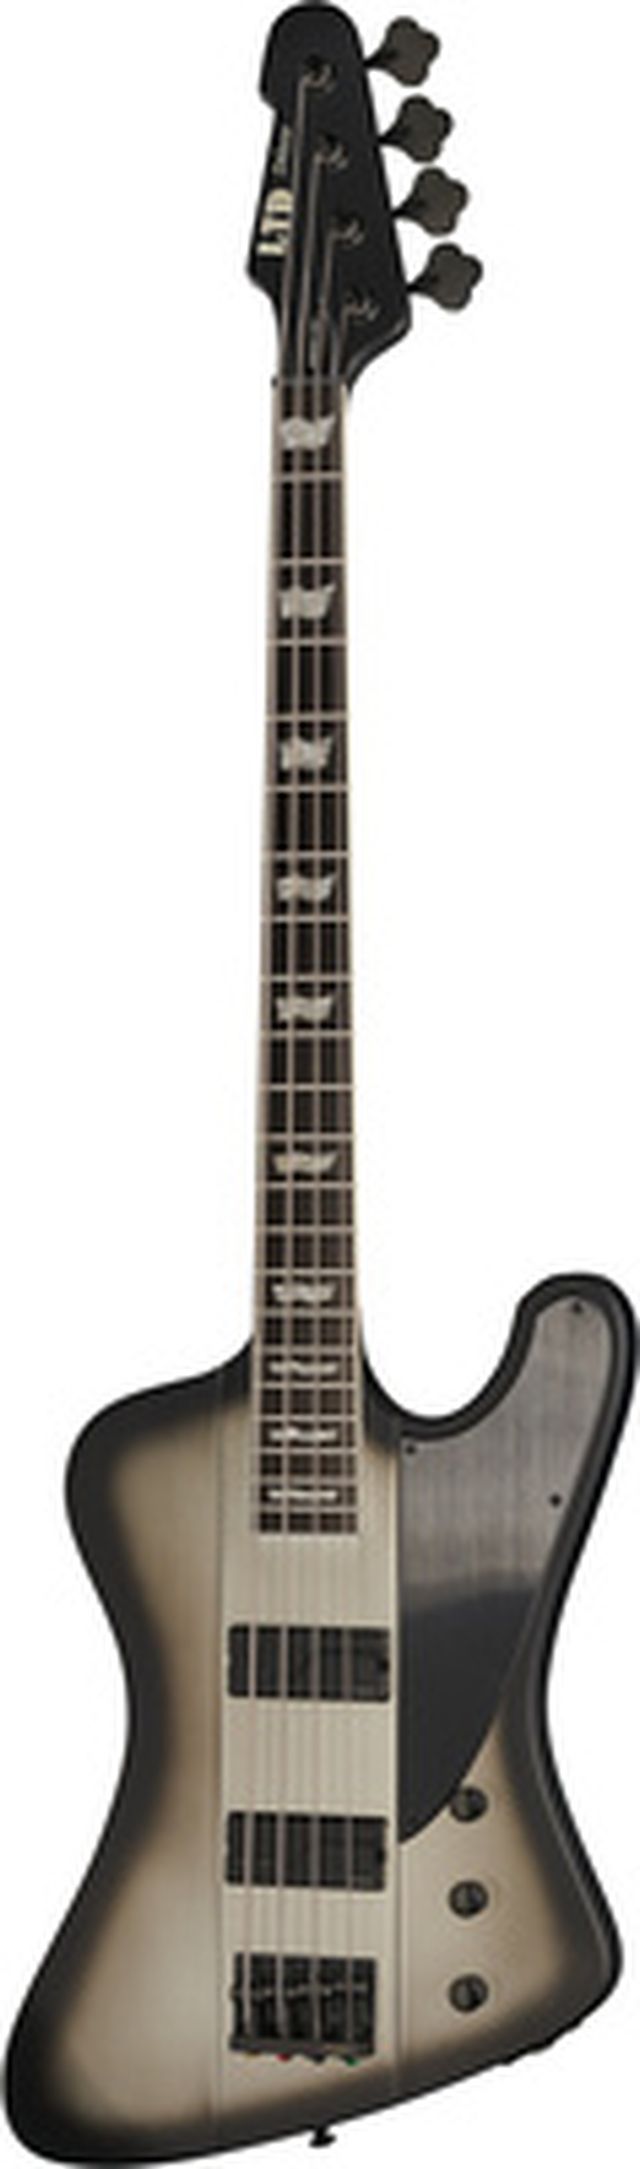 ESP LTD Phoenix-1004 Silver SB